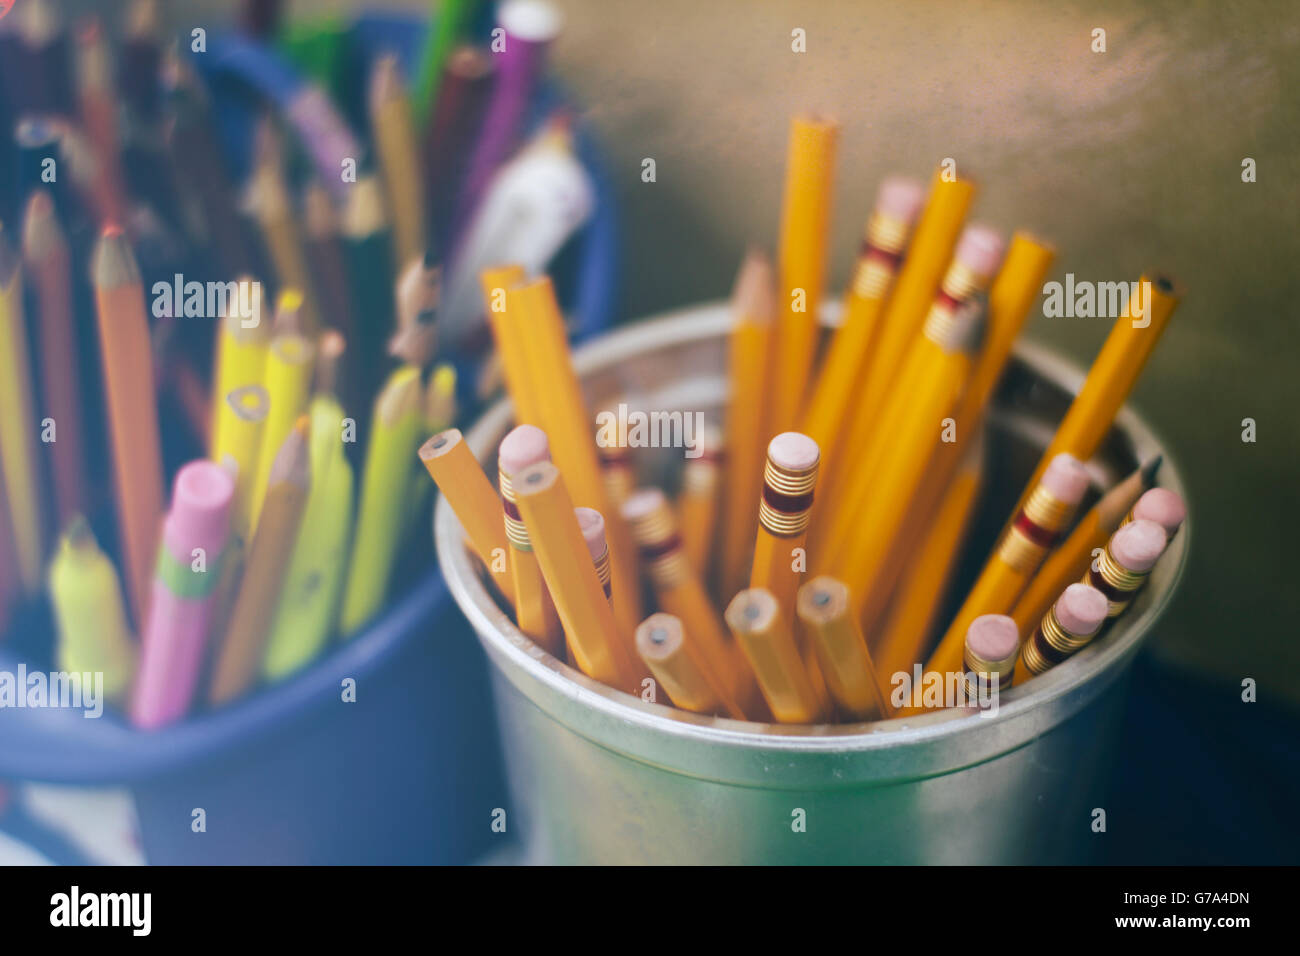 Foto von einigen Bleistifte Farben und Markierungen in Kunststoff-Flaschen Stockfoto